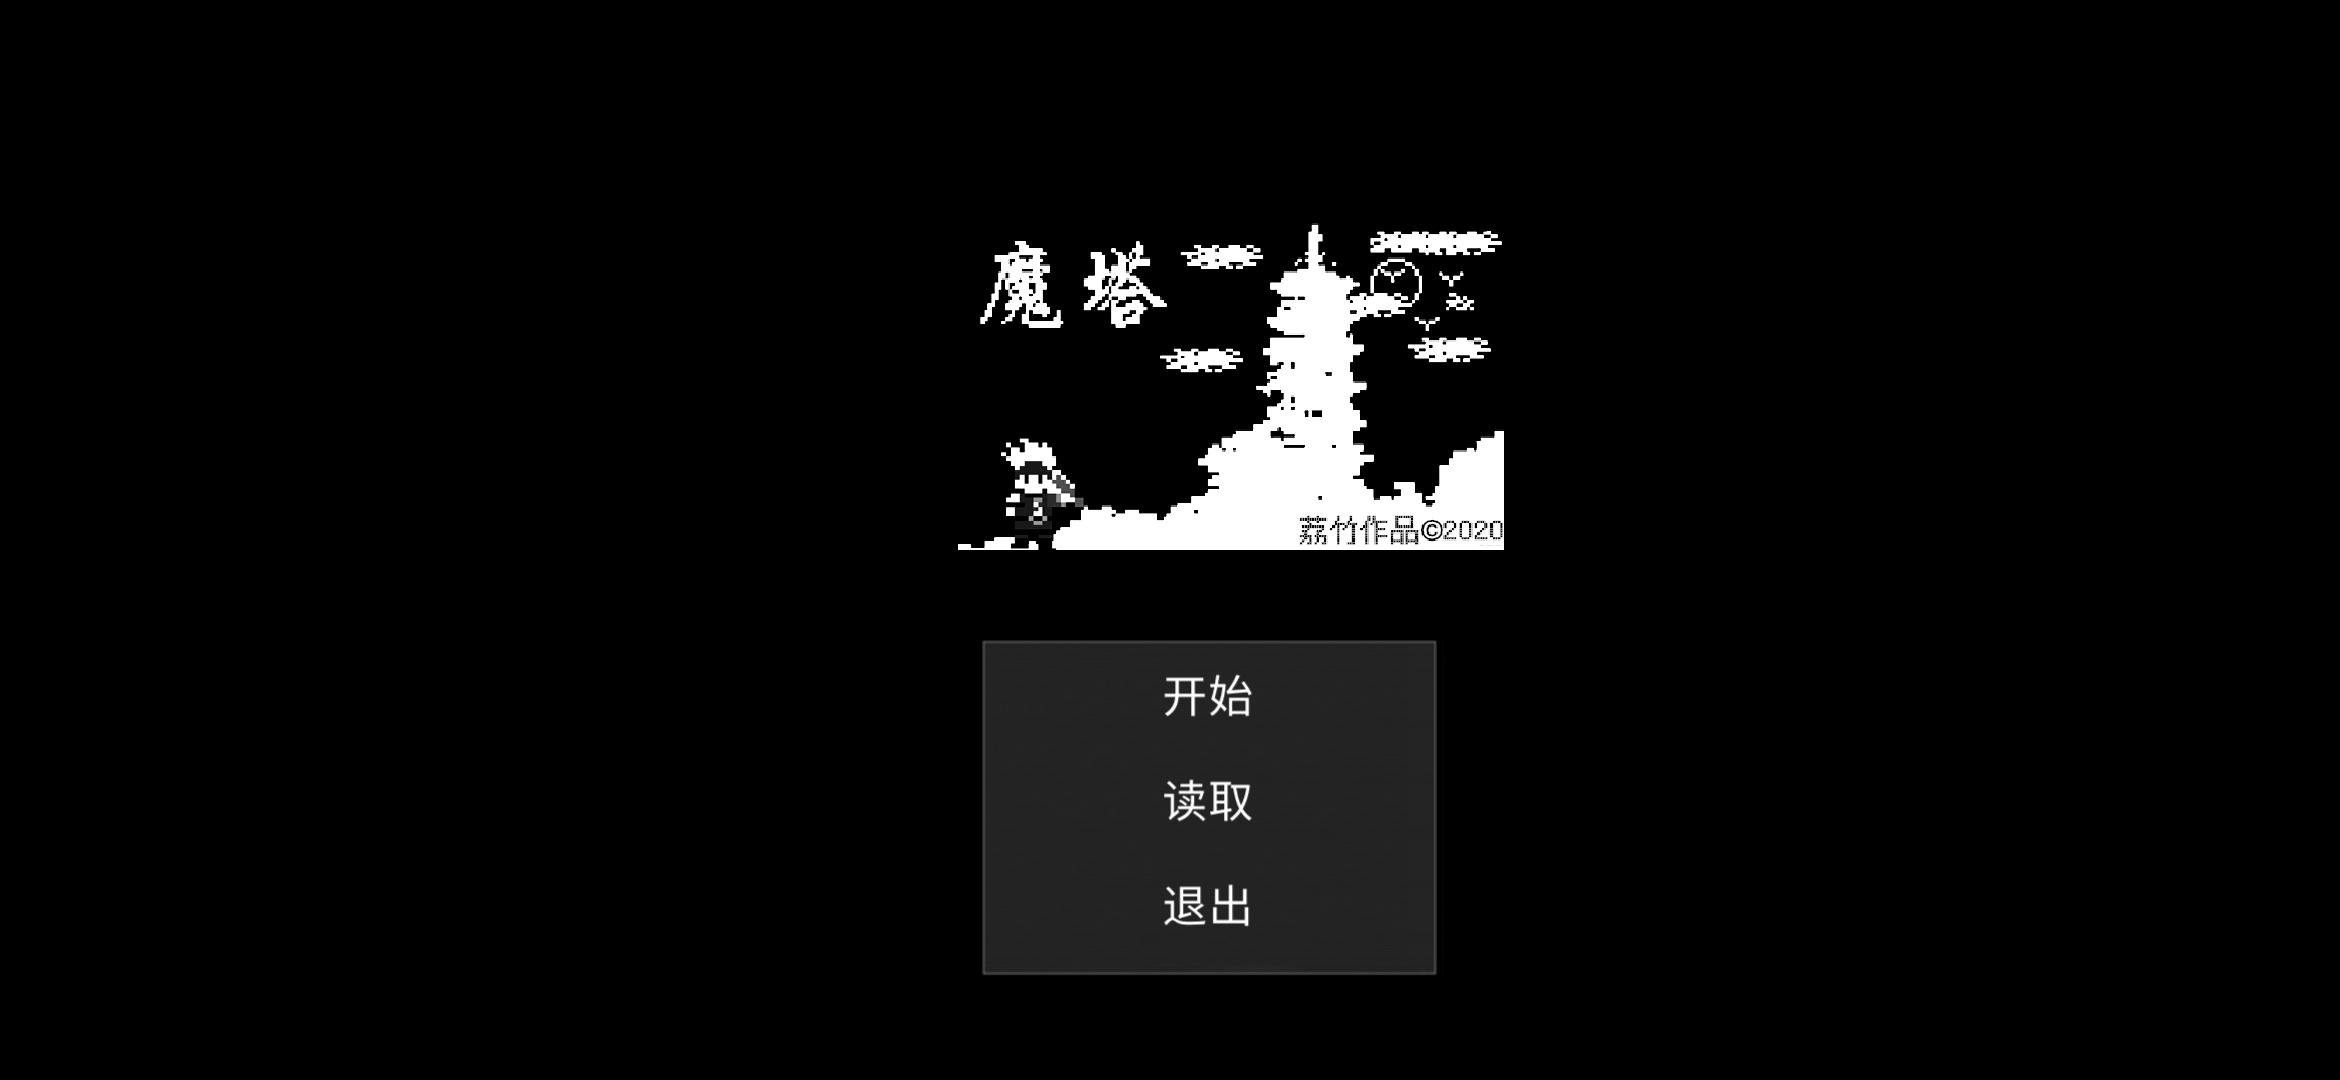 Screenshot 1 of မှော်မျှော်စင်-Liu Ge ၏စွန့်စားခန်း 1.0.1.1